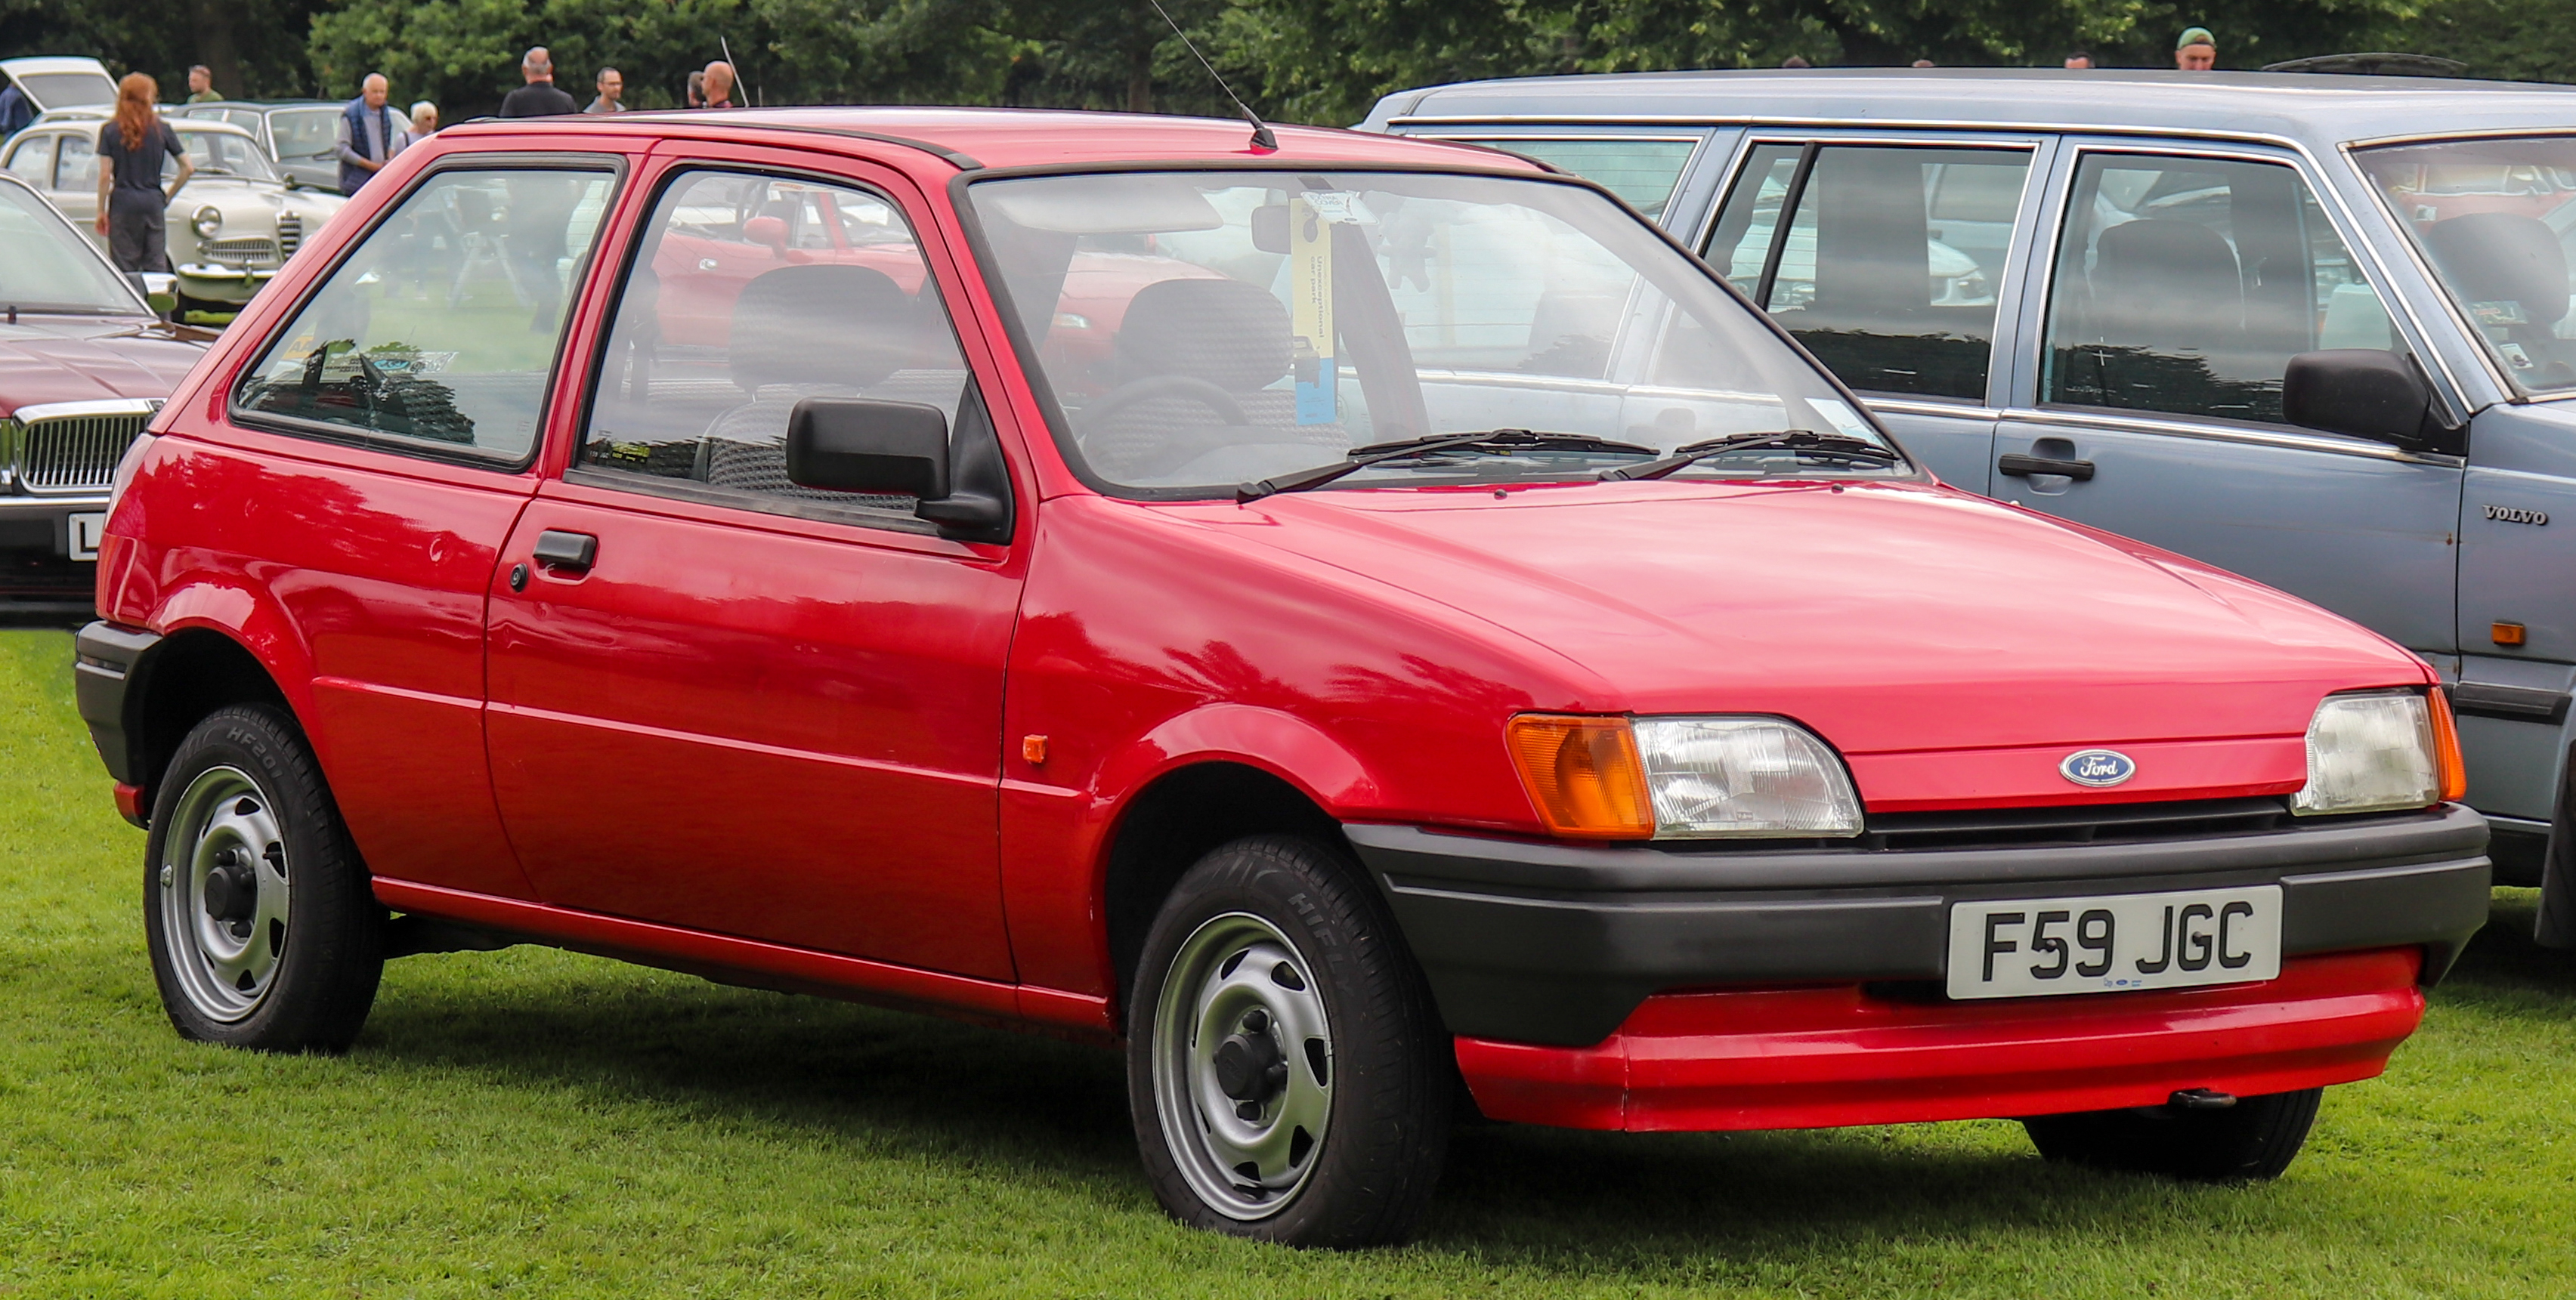 Ford Fiesta '89 – Wikipedia